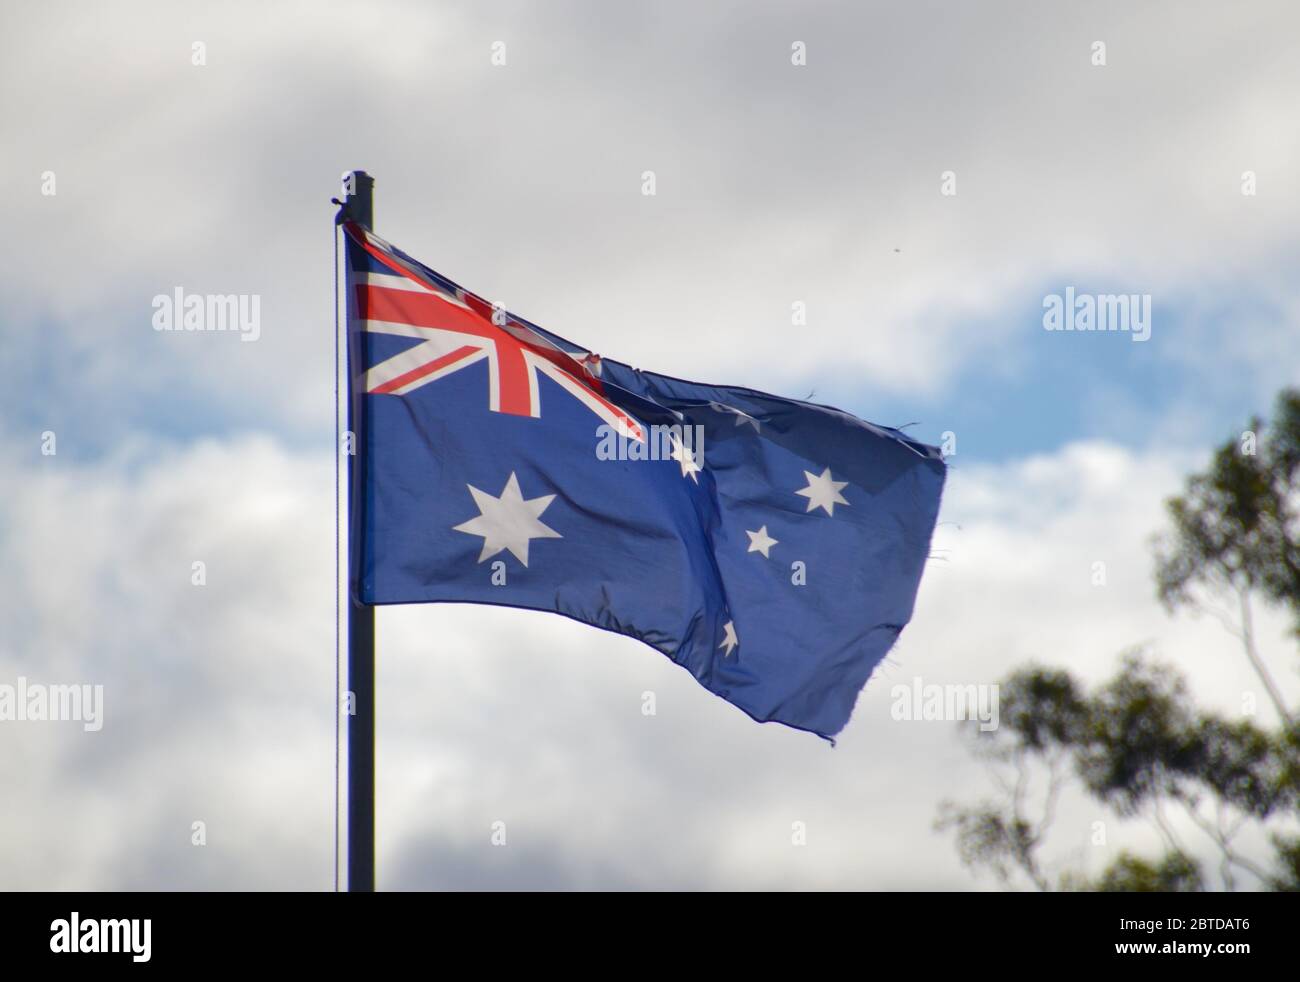 Drapeau national australien volant contre un ciel bleu nuageux avec un arbre à gomme Banque D'Images